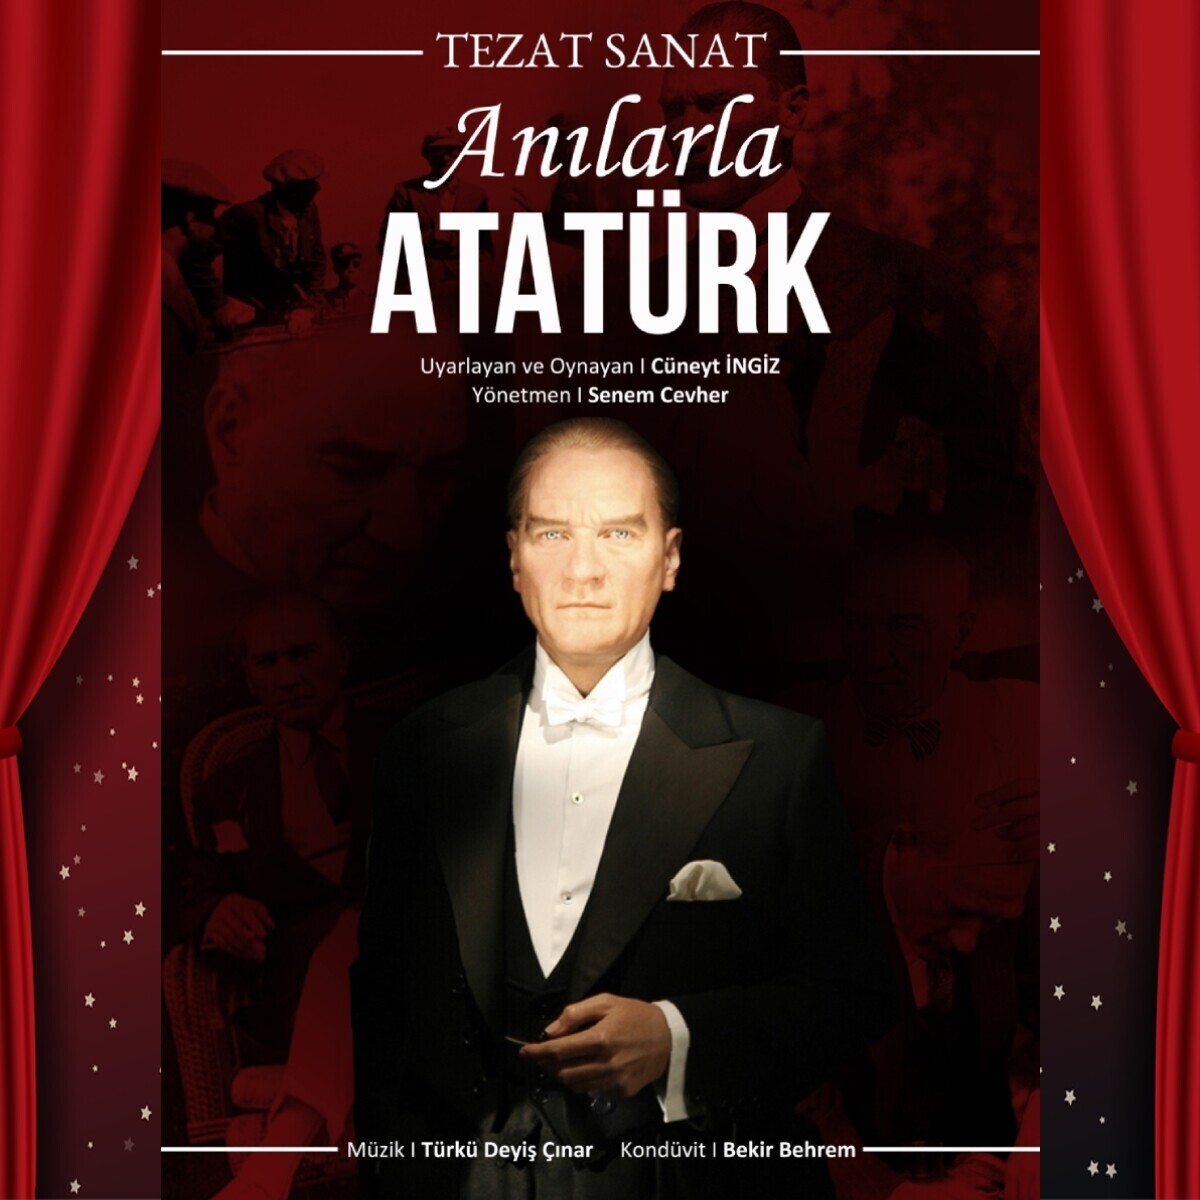 'Anılarla Atatürk' Tiyatro Oyunu Bileti